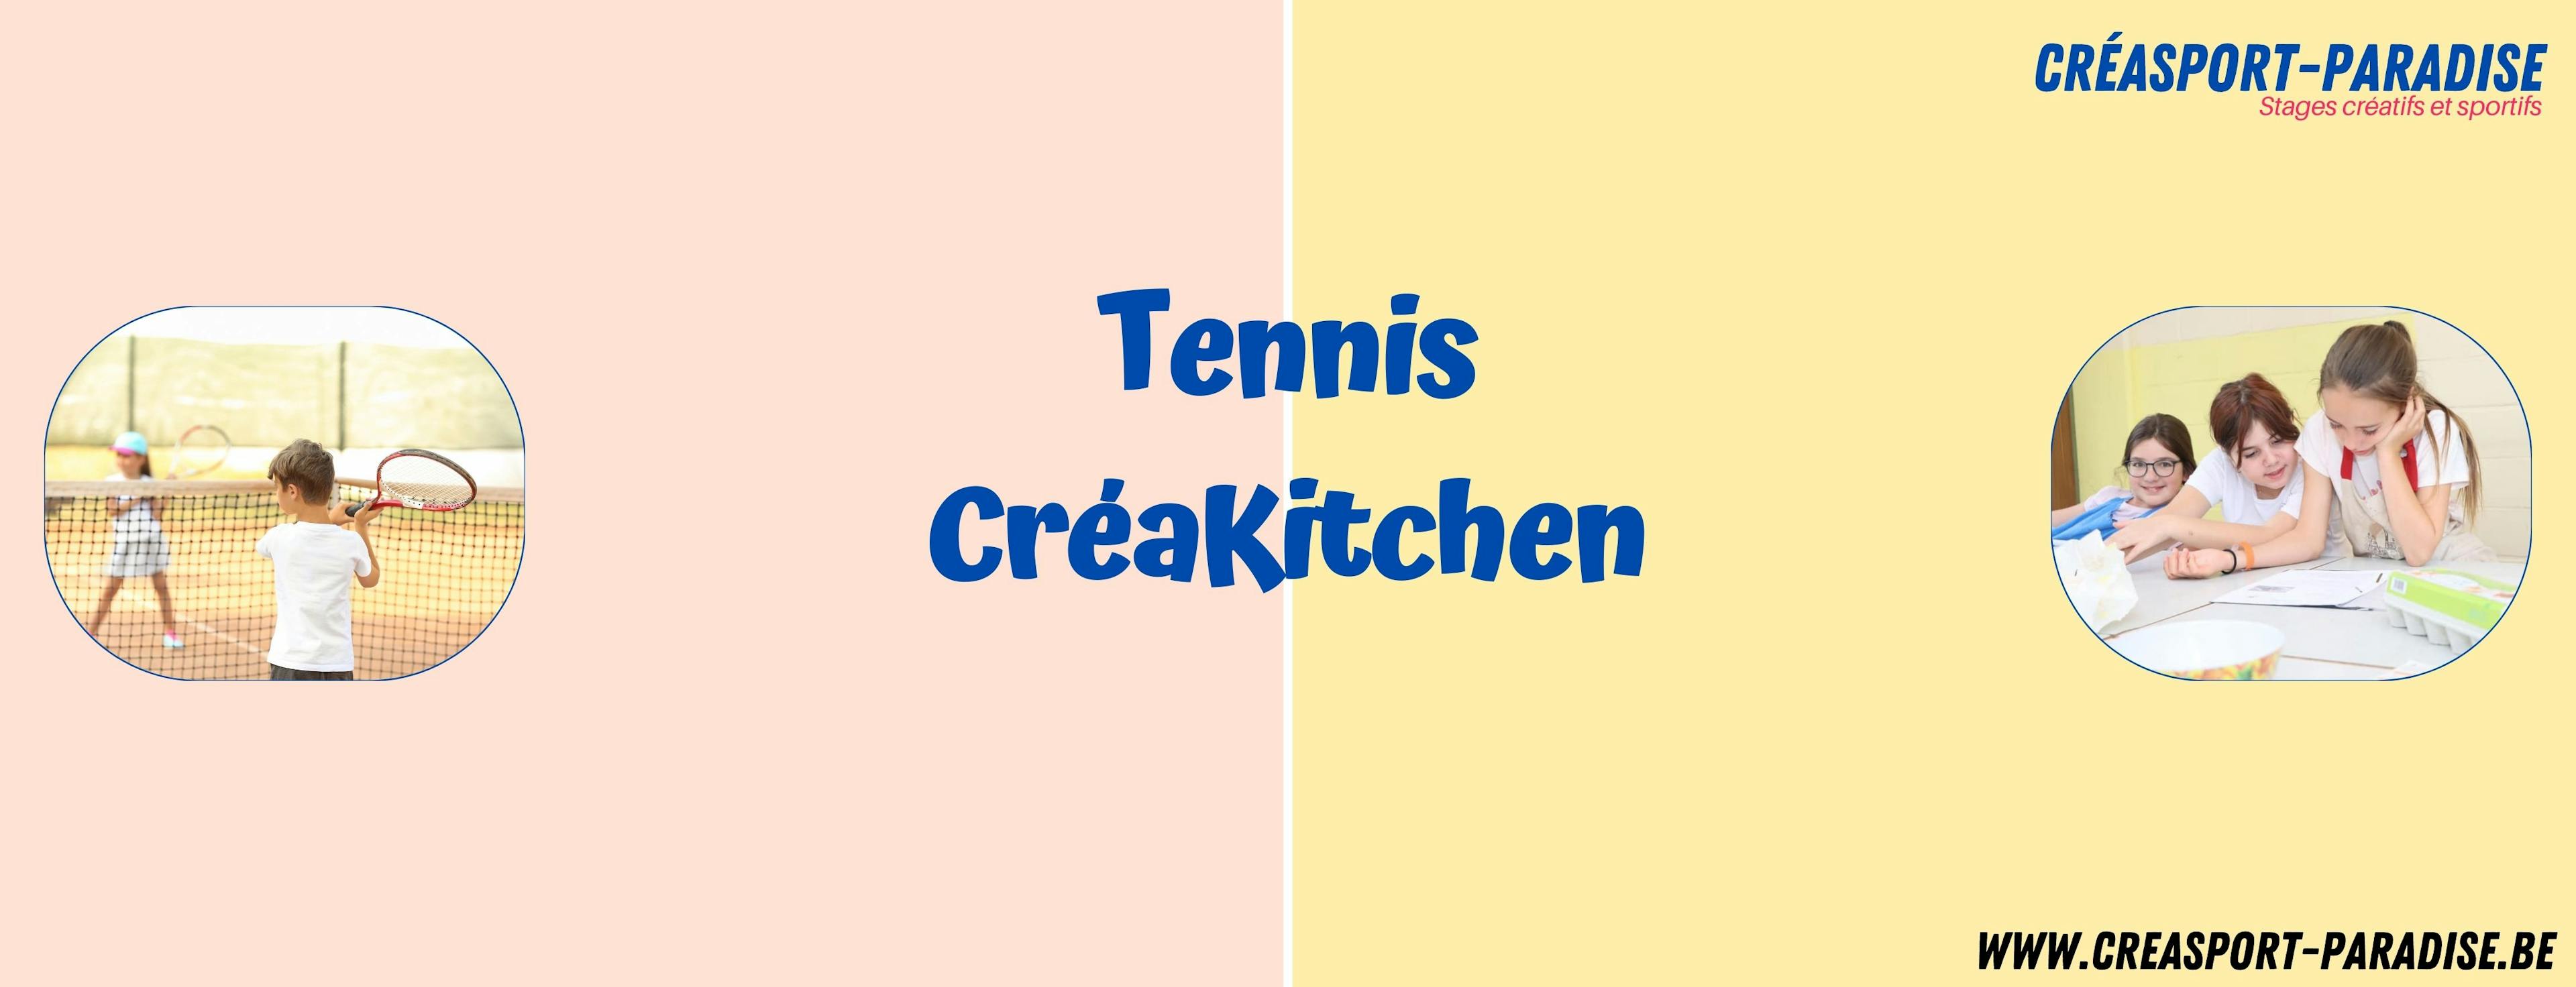 Tennis - Créakitchen